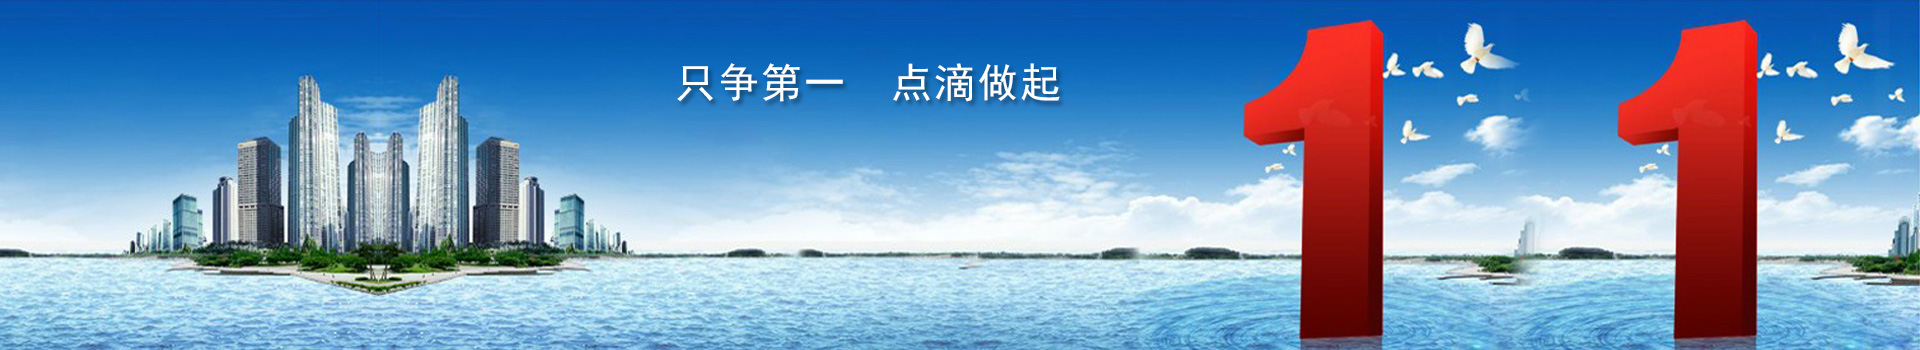 上海新茶资源,上海娱乐网,爱上海同城交友,上海娱乐网